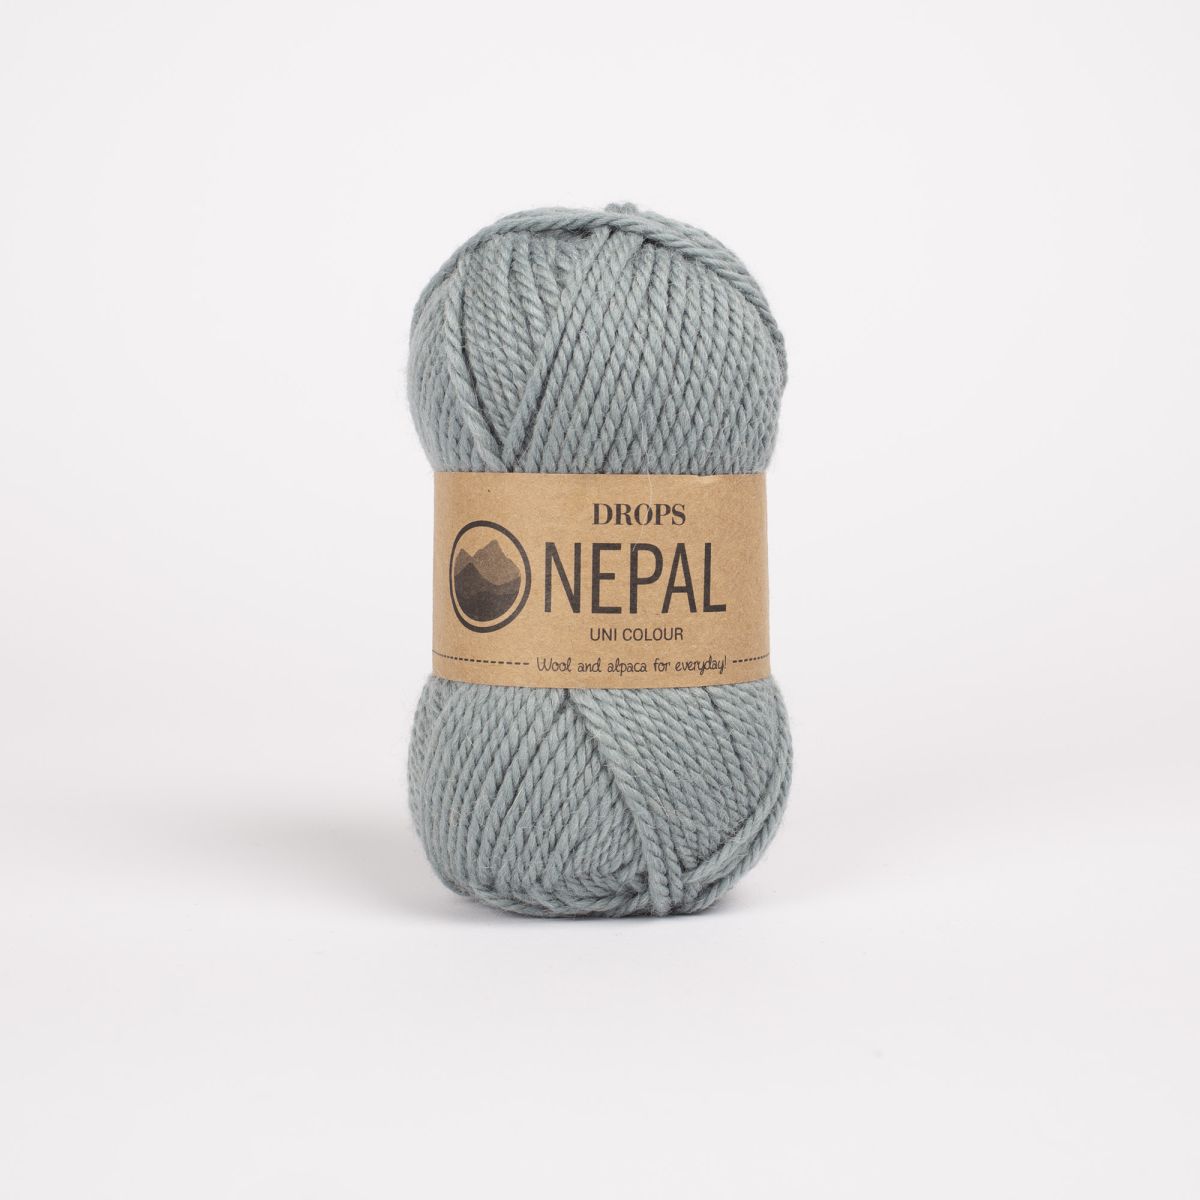 Drops Nepal - - Drops - - og service i højsæde. Brug for råd, ring 26 74 72 04